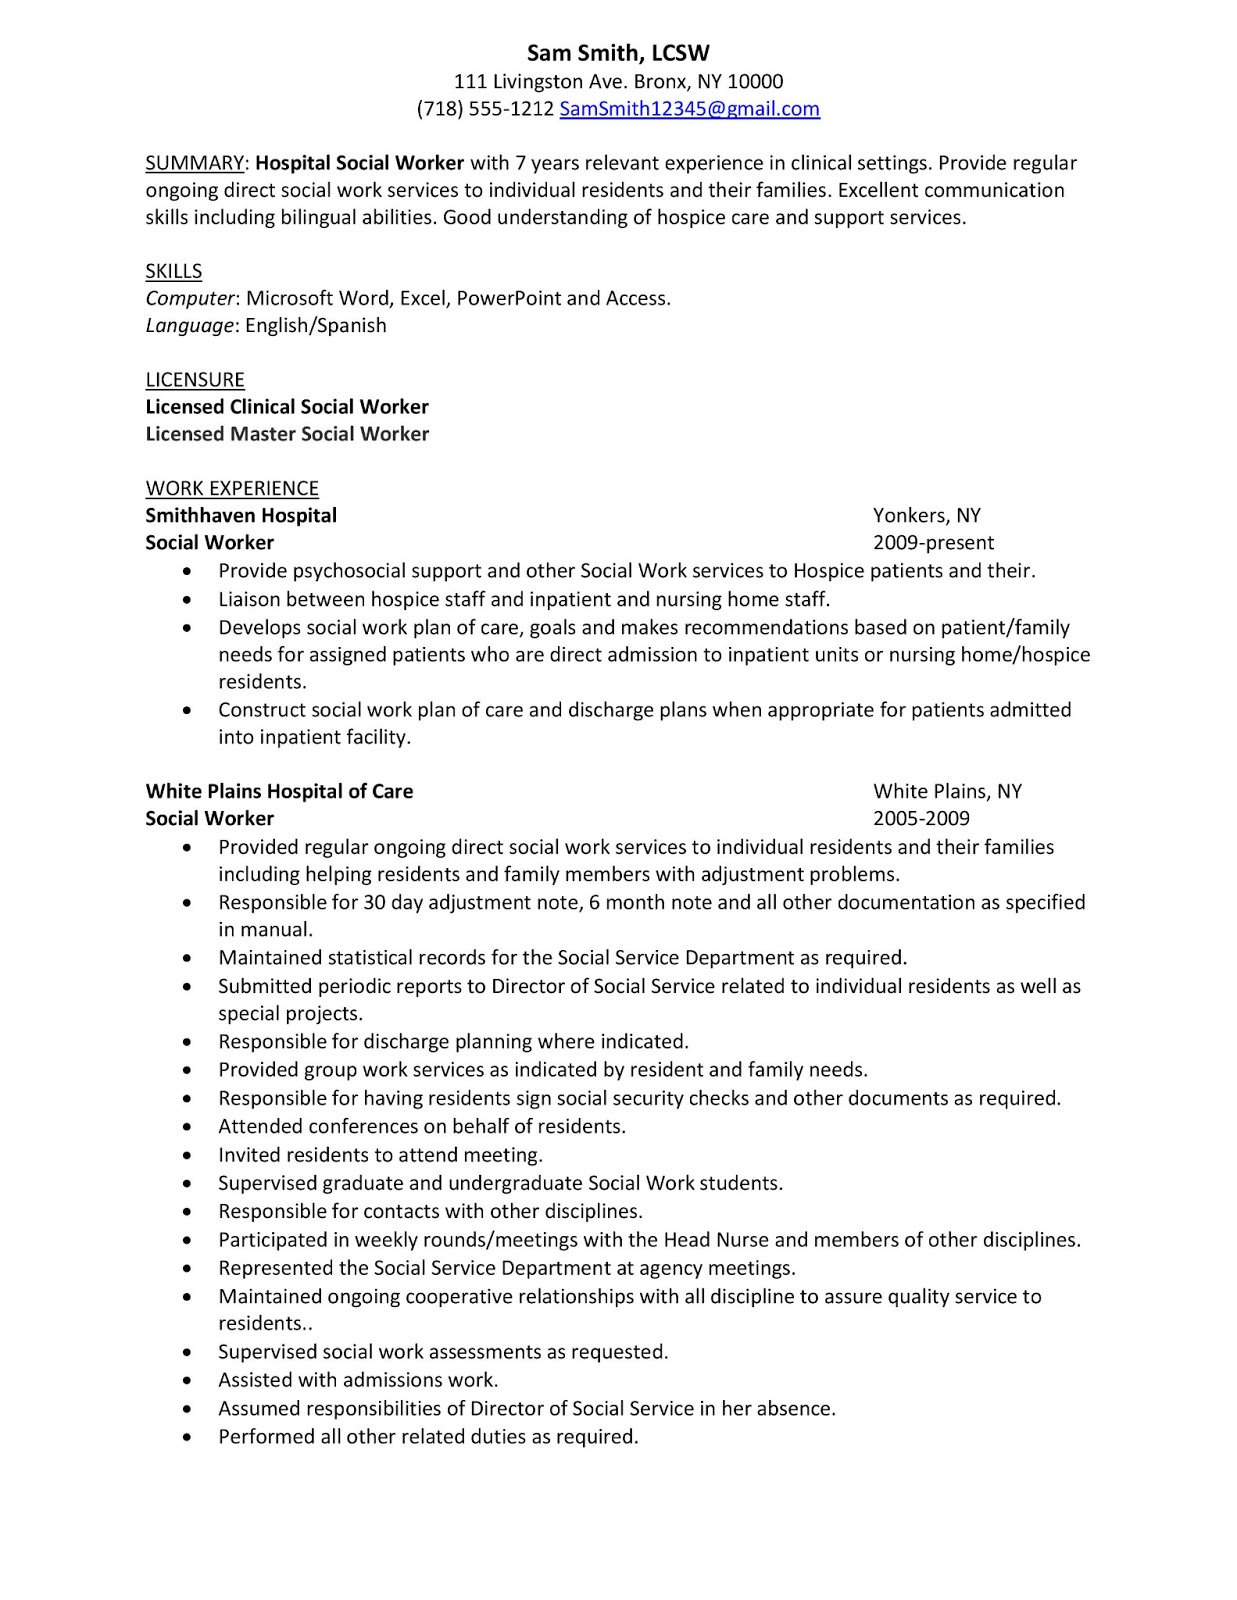 Temp jobs on resume sample